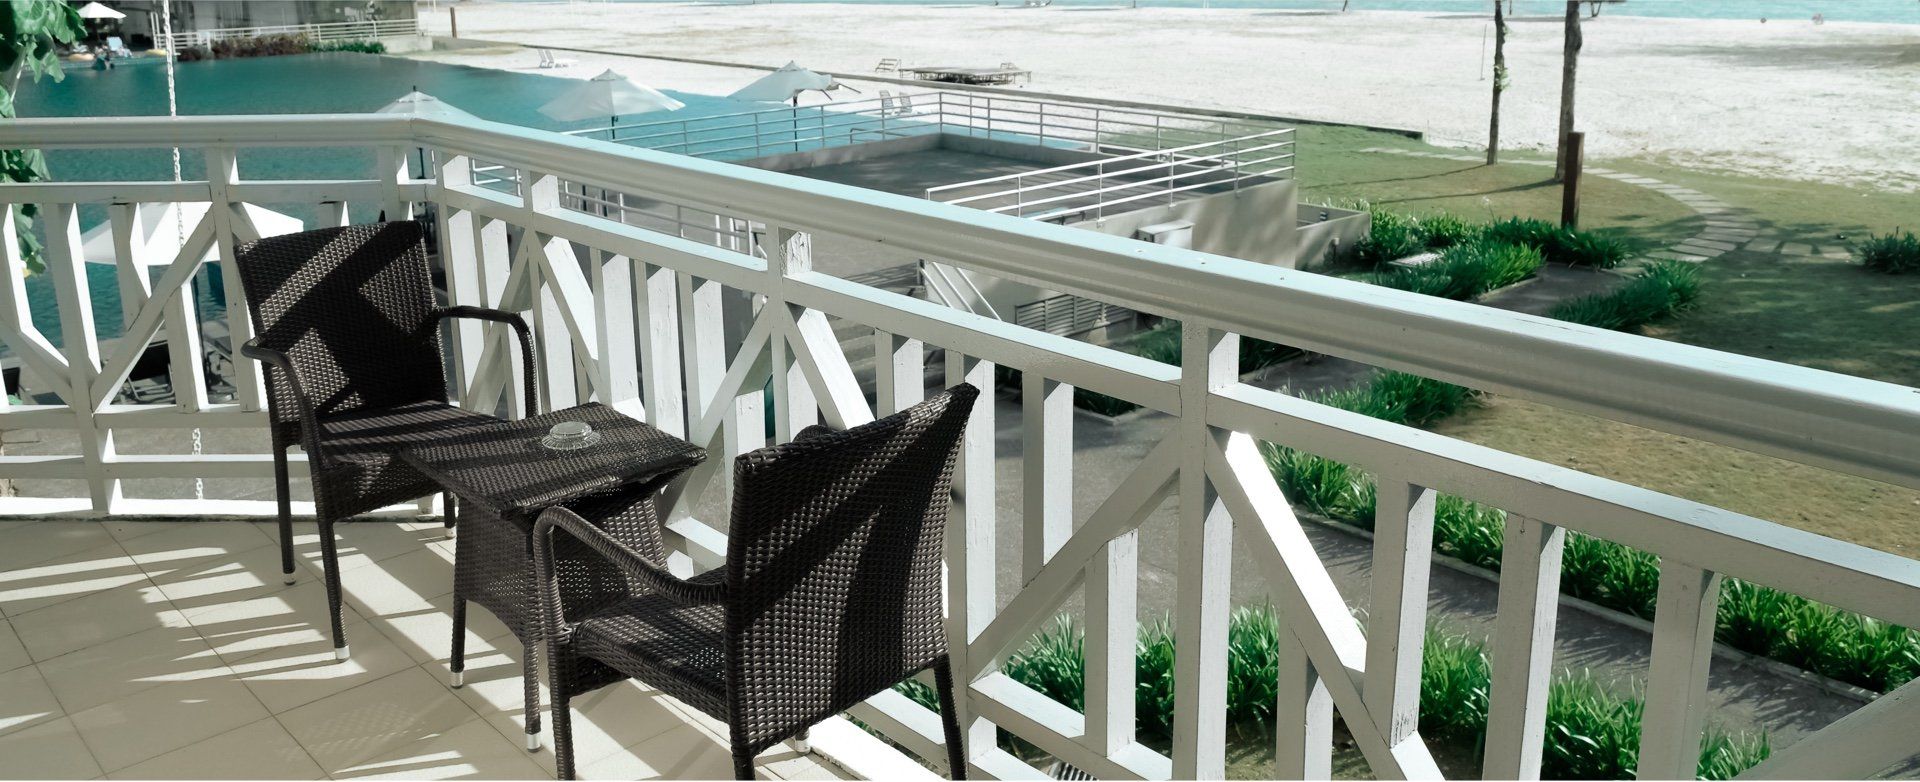 Balkon von Dulaj Innenausbau - moderner Trockenbau - aus Beverungen